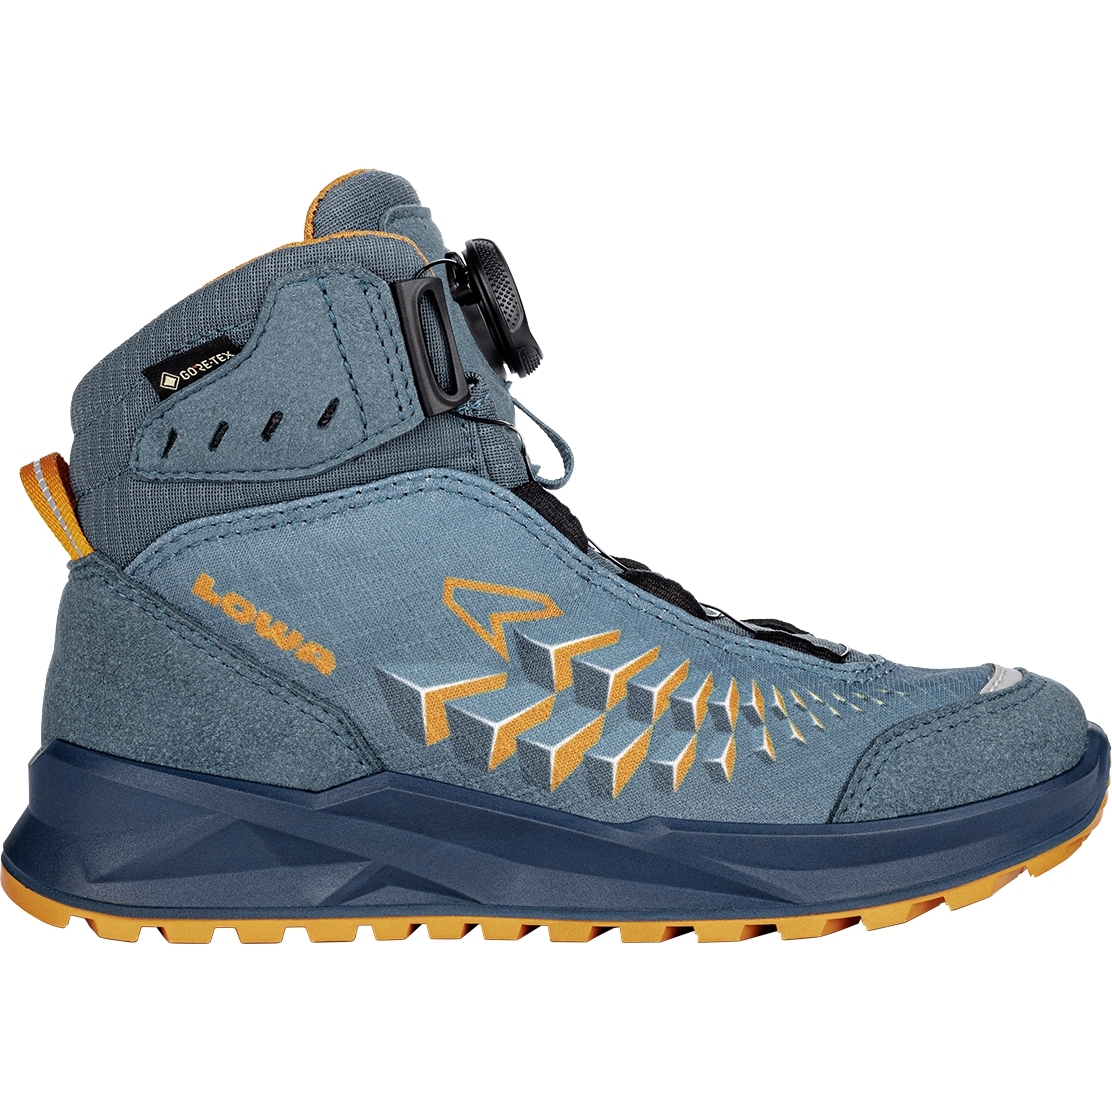 Produktbild von LOWA Ferrox GTX Mid Junior Schuhe Kinder - petrol/mango (Größe 36-39)